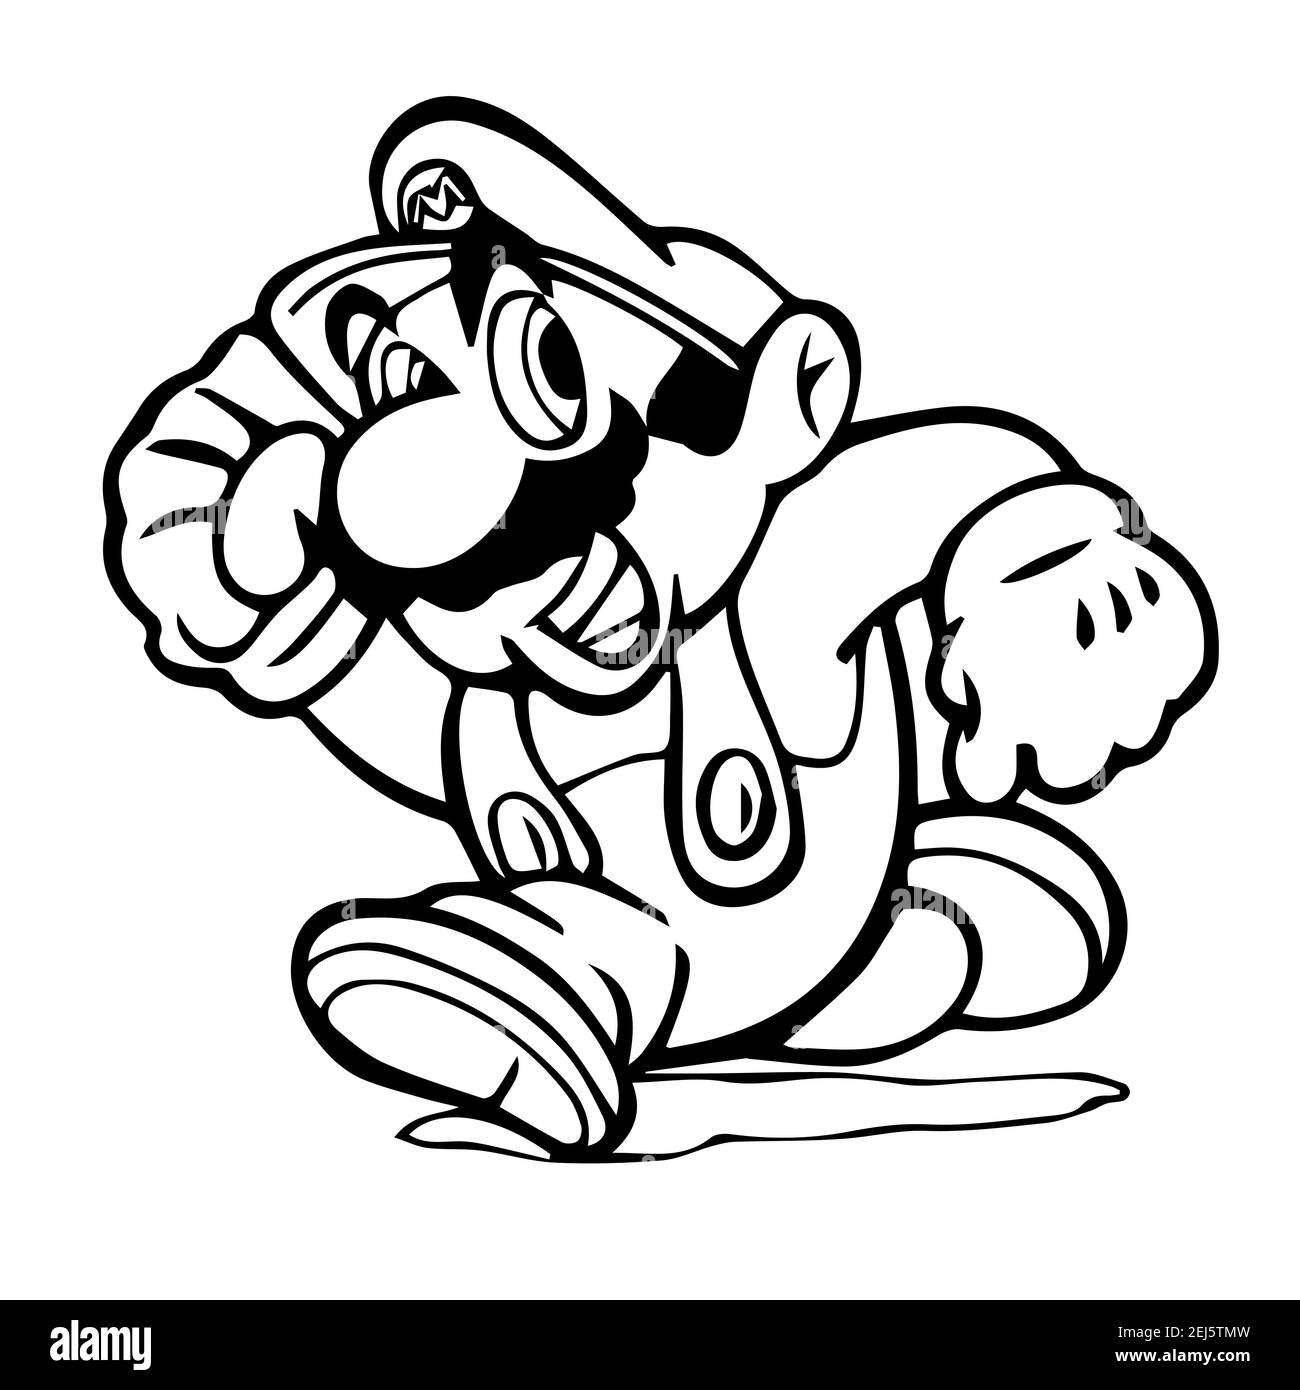 Mario Pixel Art auf Plakat gedruckt, ist Mario eine fiktive Figur in der Mario Videospiel-Franchise, von Nintendo erstellt Stock Vektor